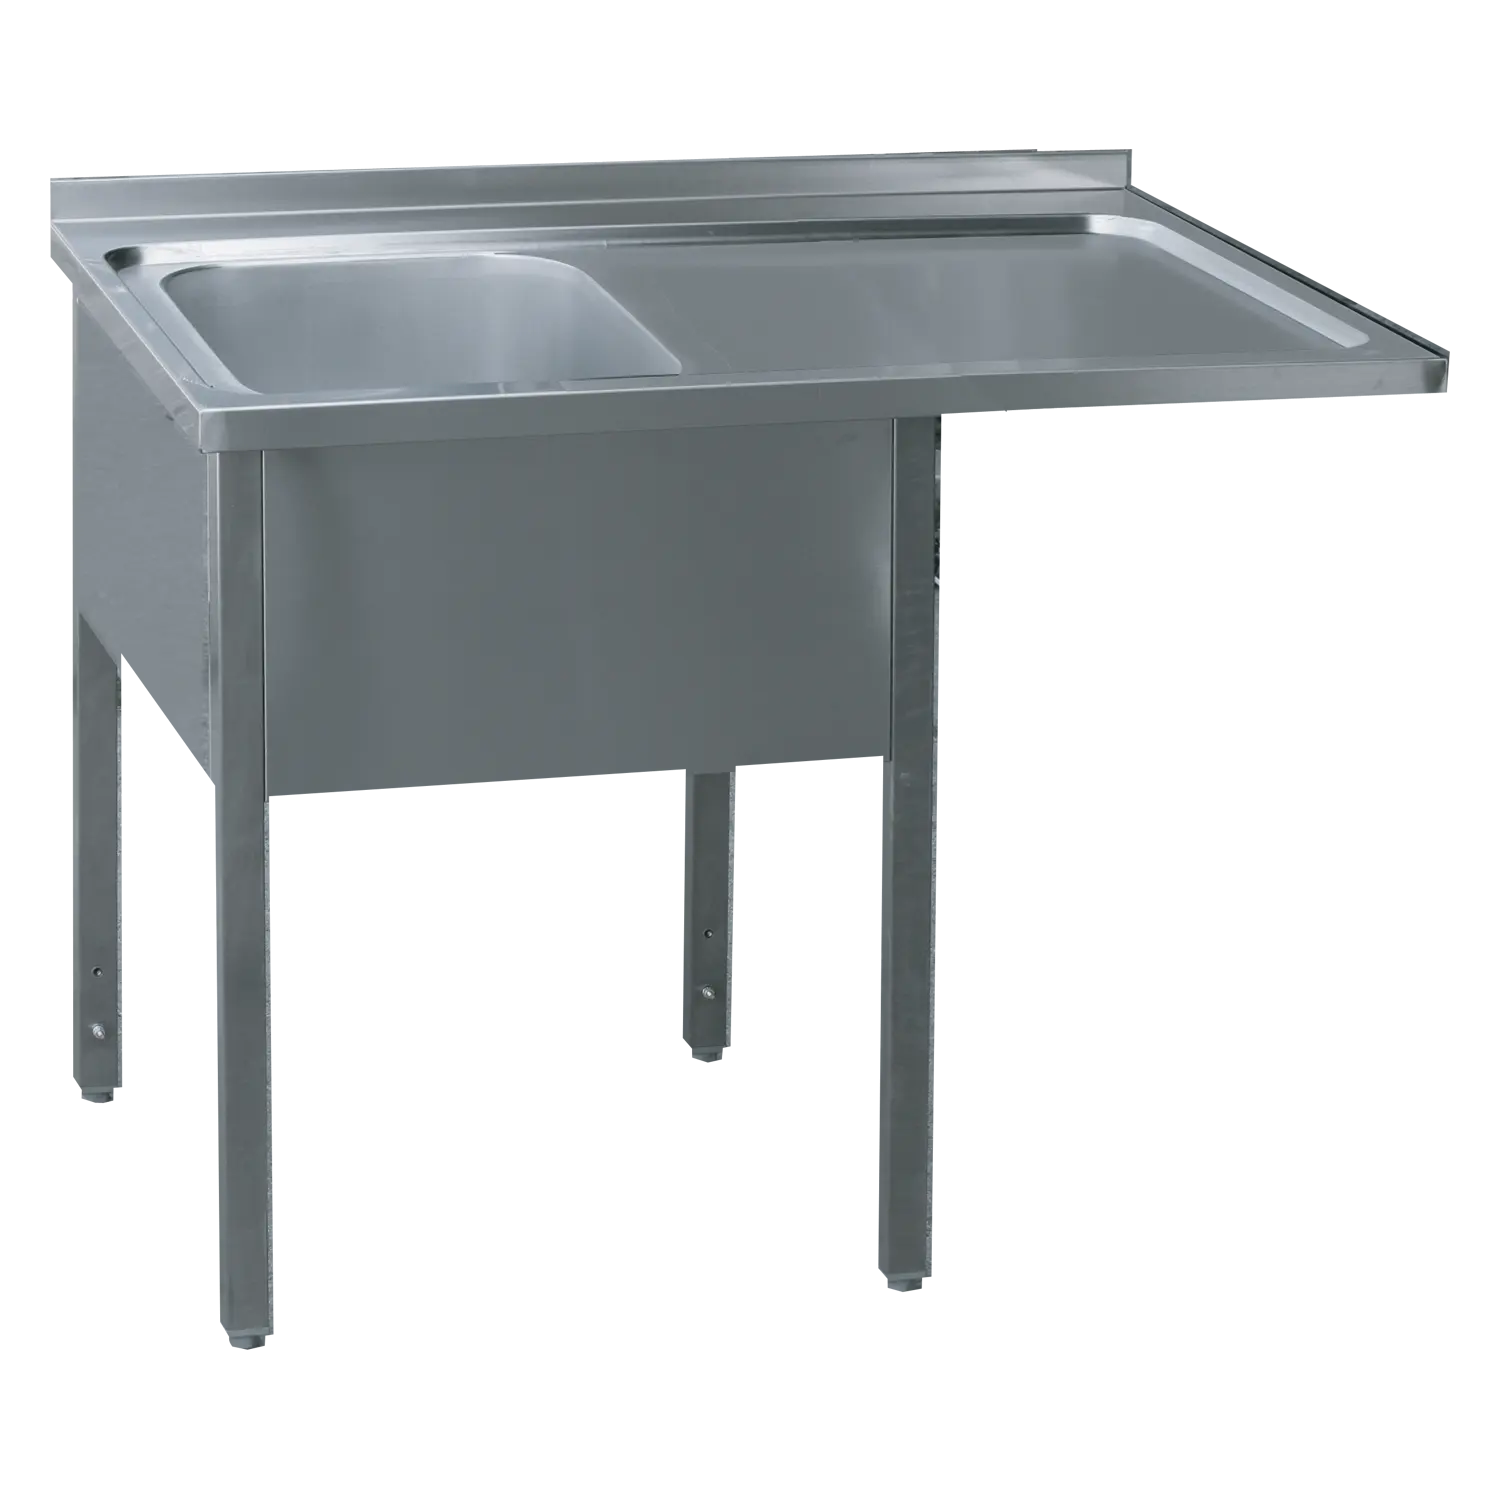 MSJOP/M 7014 - Stůl mycí 140x70x90 - 1x dřez 50x40x30 odkapávací plocha pravá